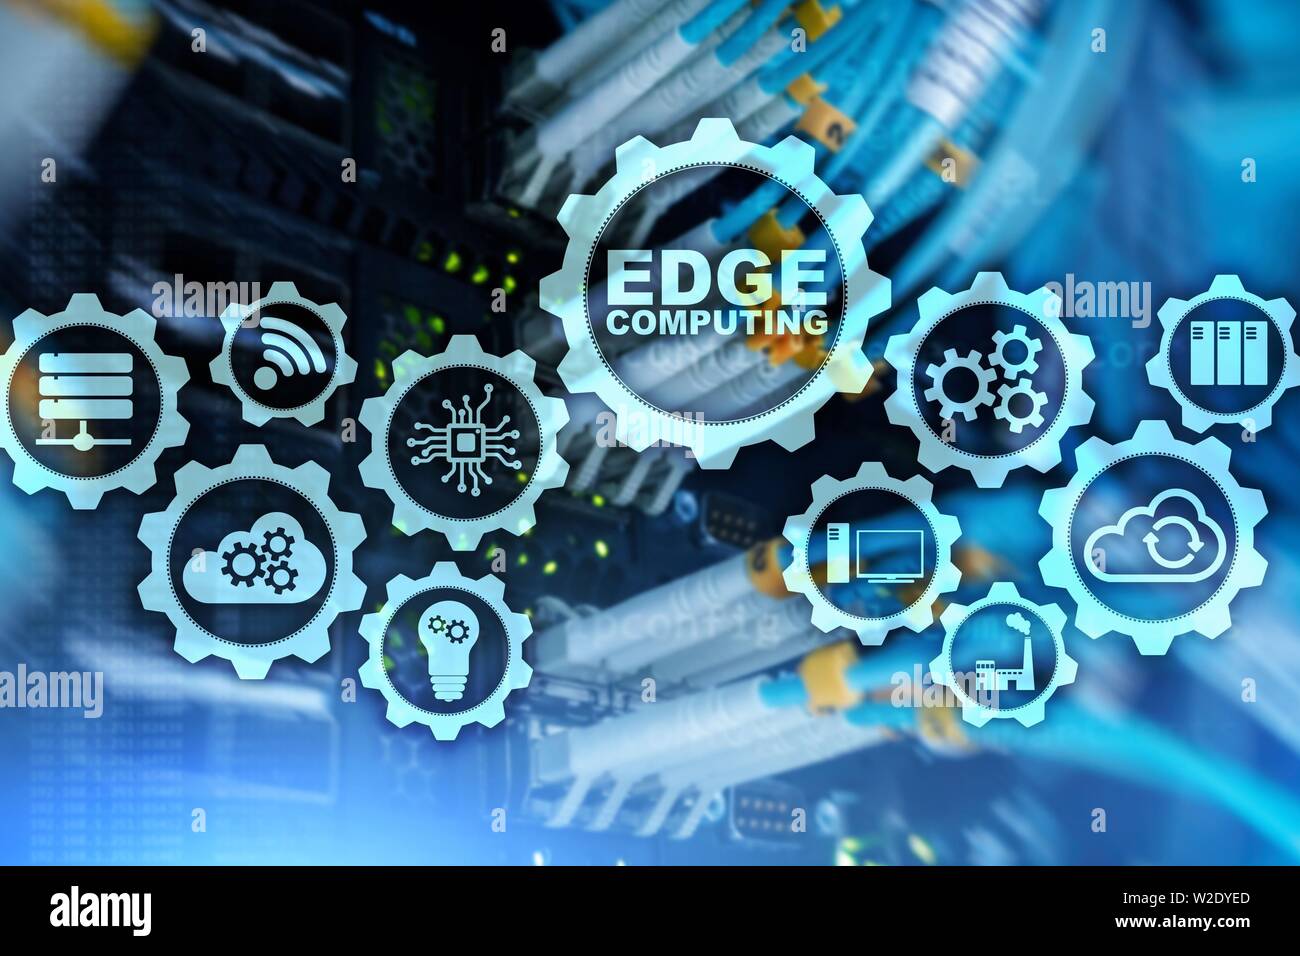 EDGE COMPUTING auf modernen Server zimmer Hintergrund. Informationstechnologie und Business Konzept für ressourcenintensive verteilten Computing. Stockfoto